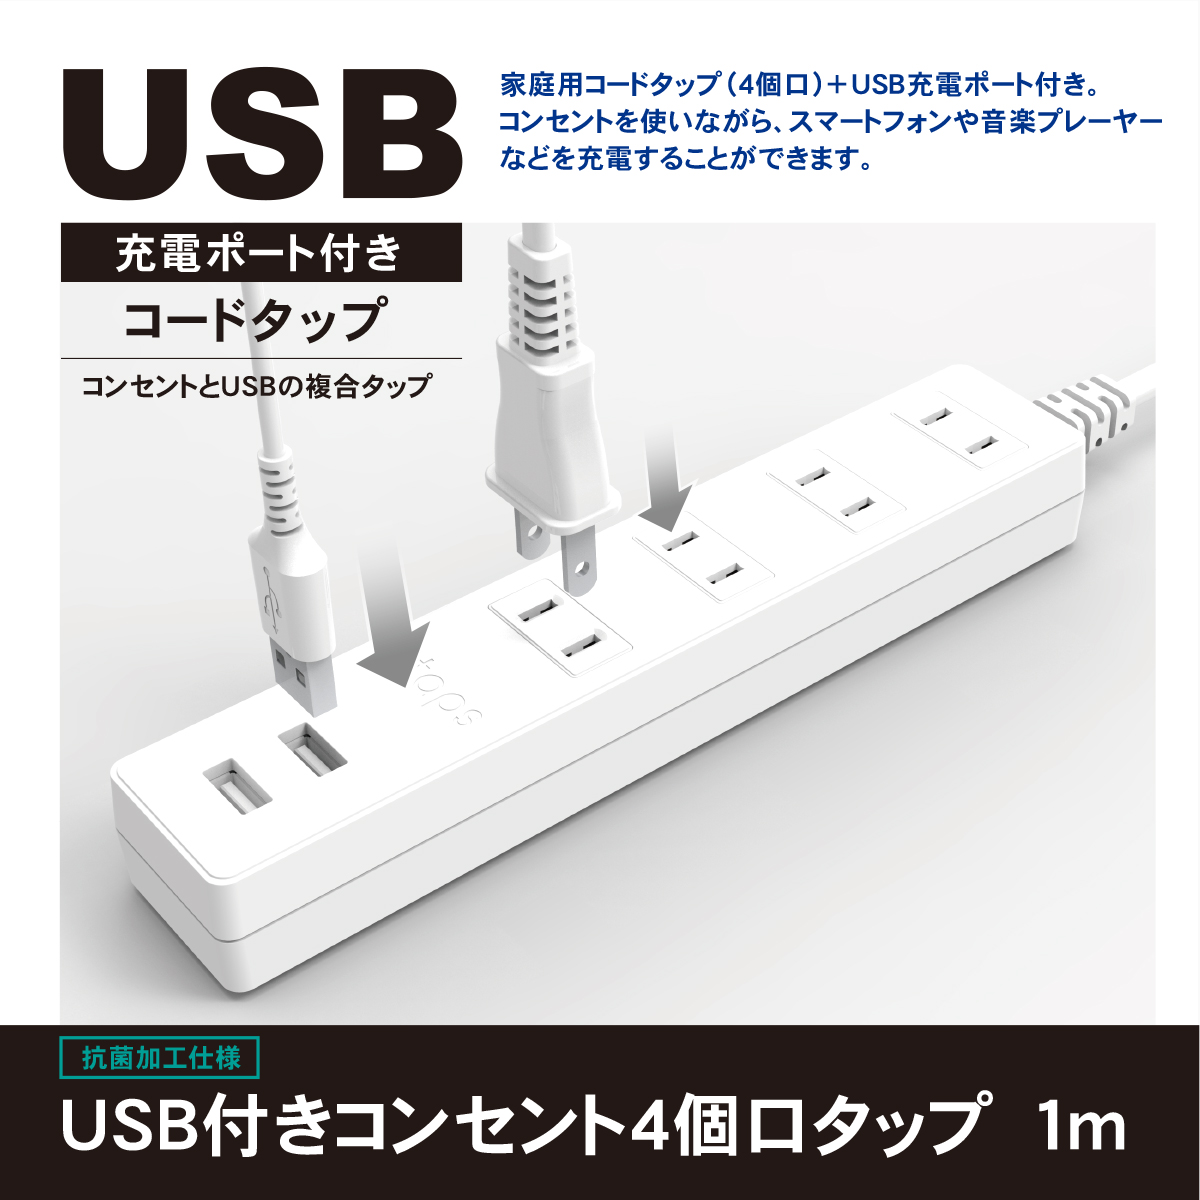 製品情報 | USB付きコンセント4個口タップ 1m | STPA410-WT | 株式会社